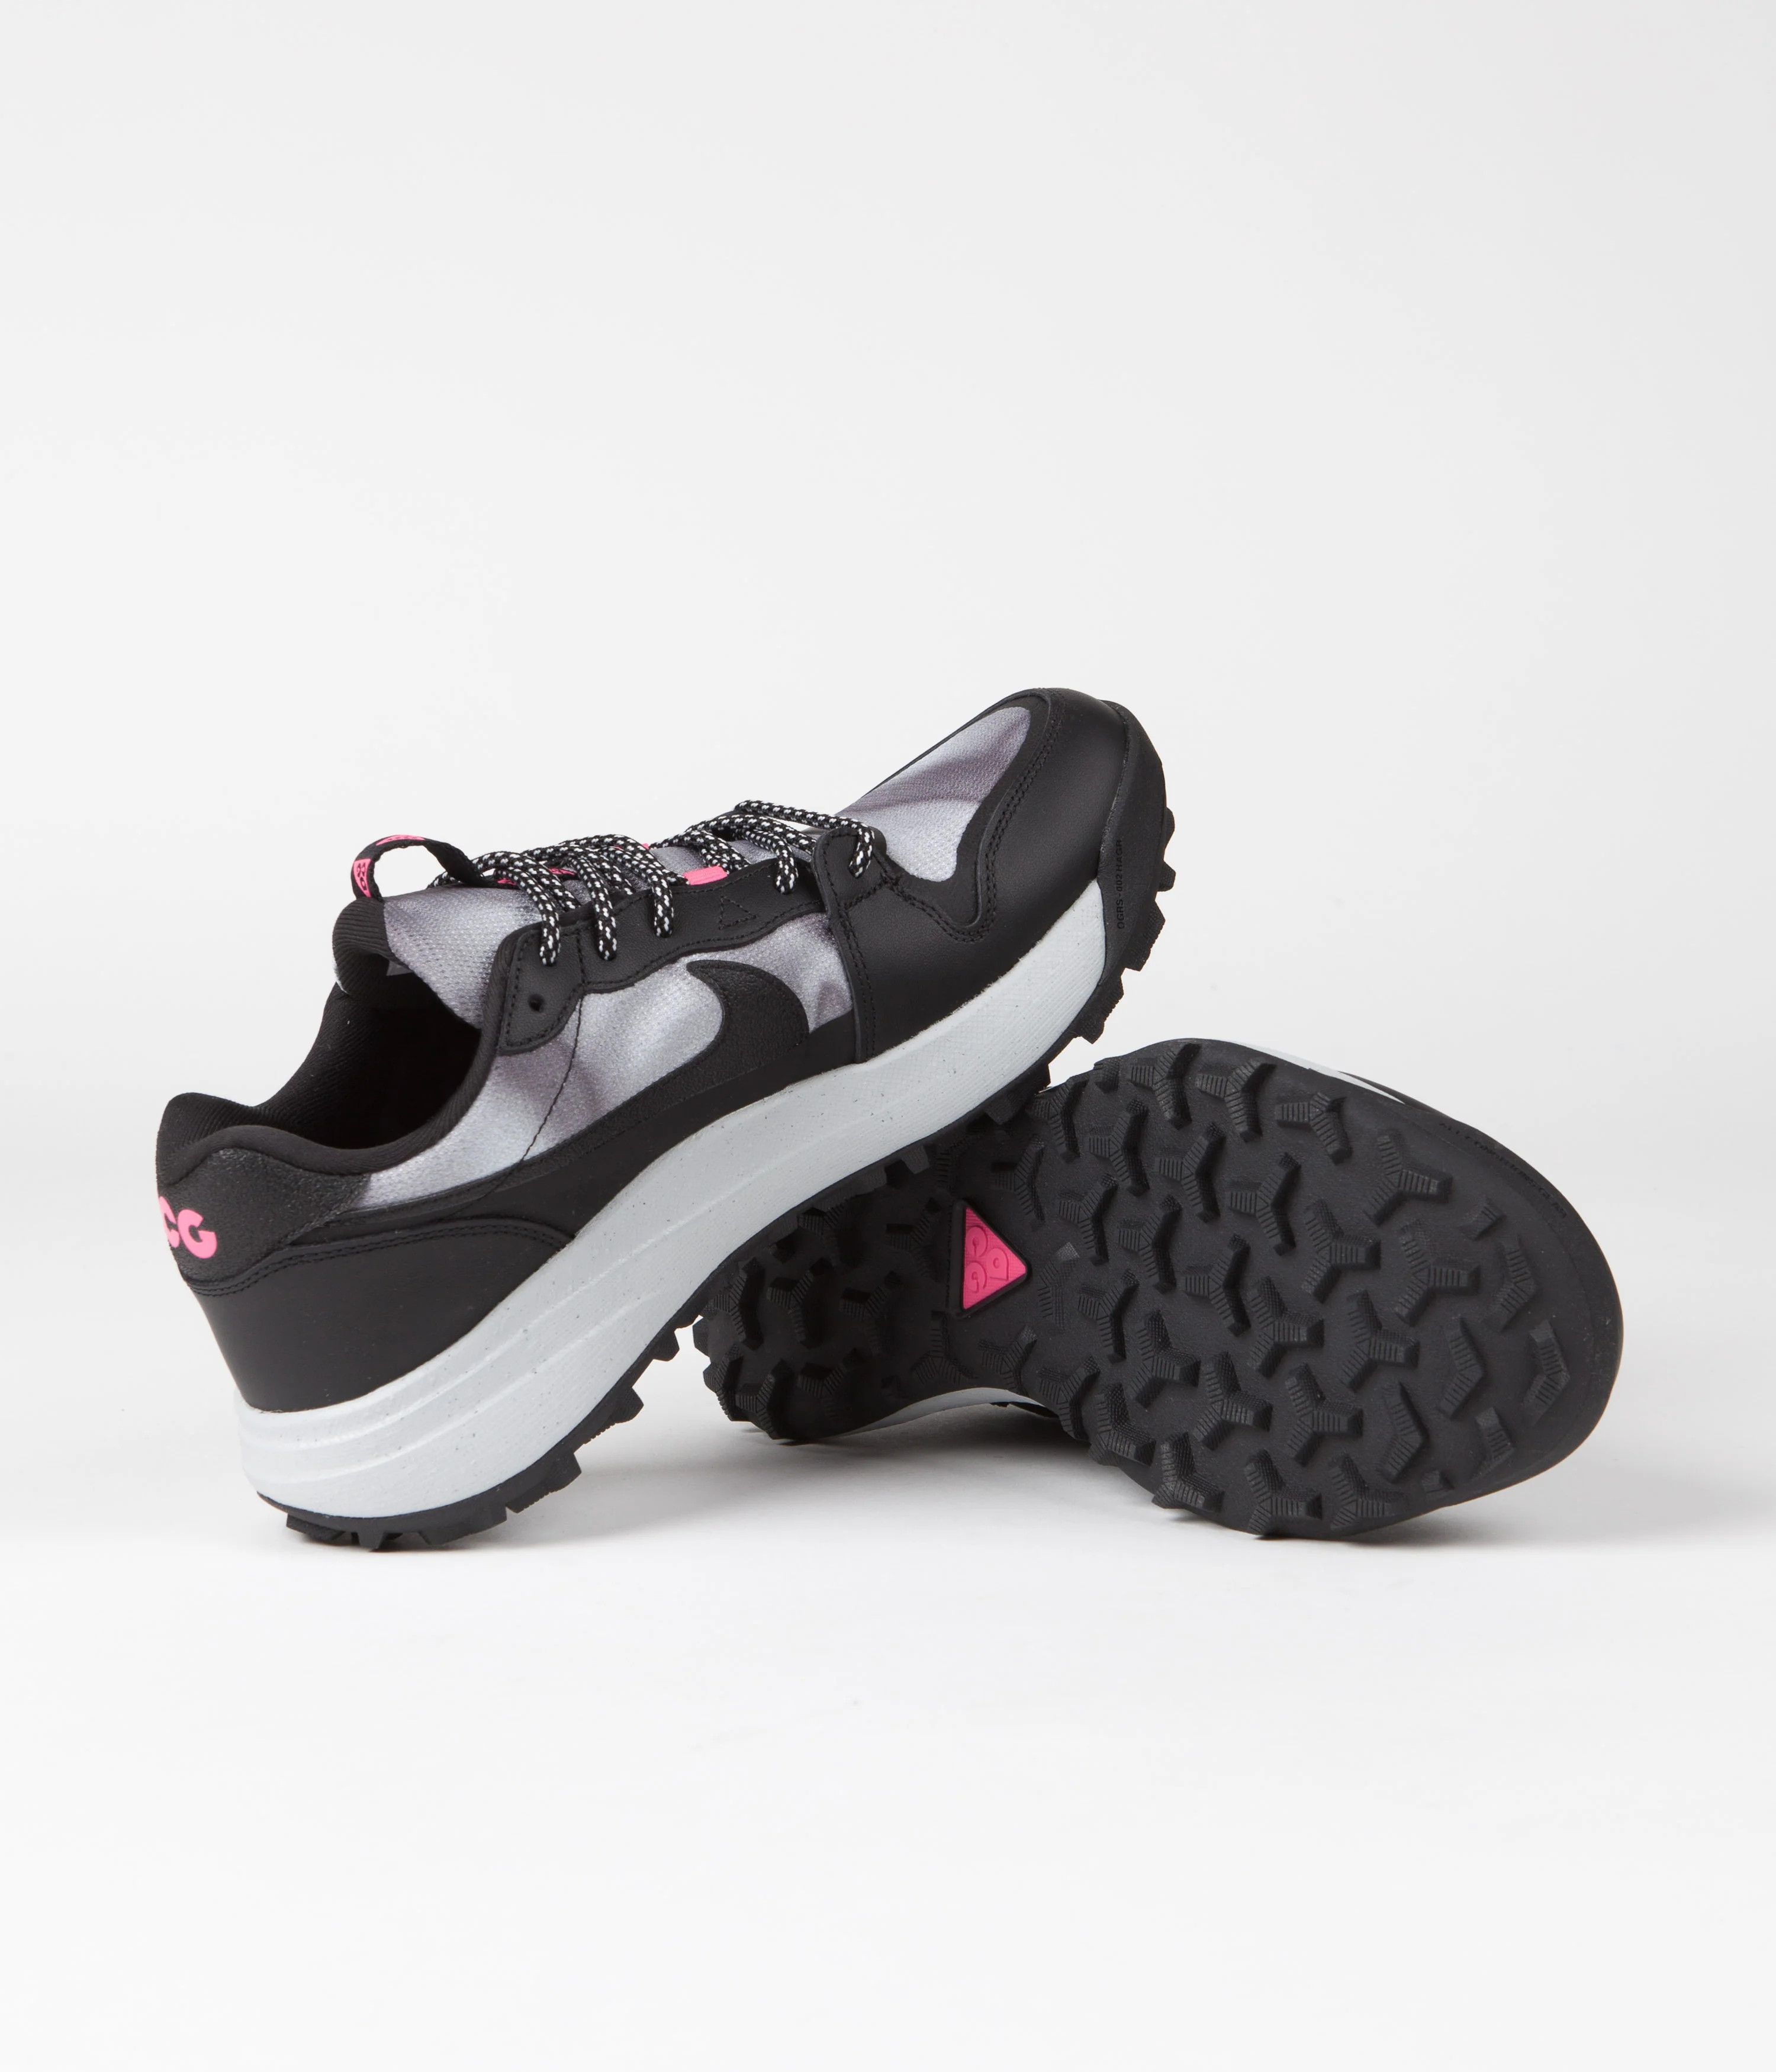 Nike ACG Lowcate Pink | Grailed